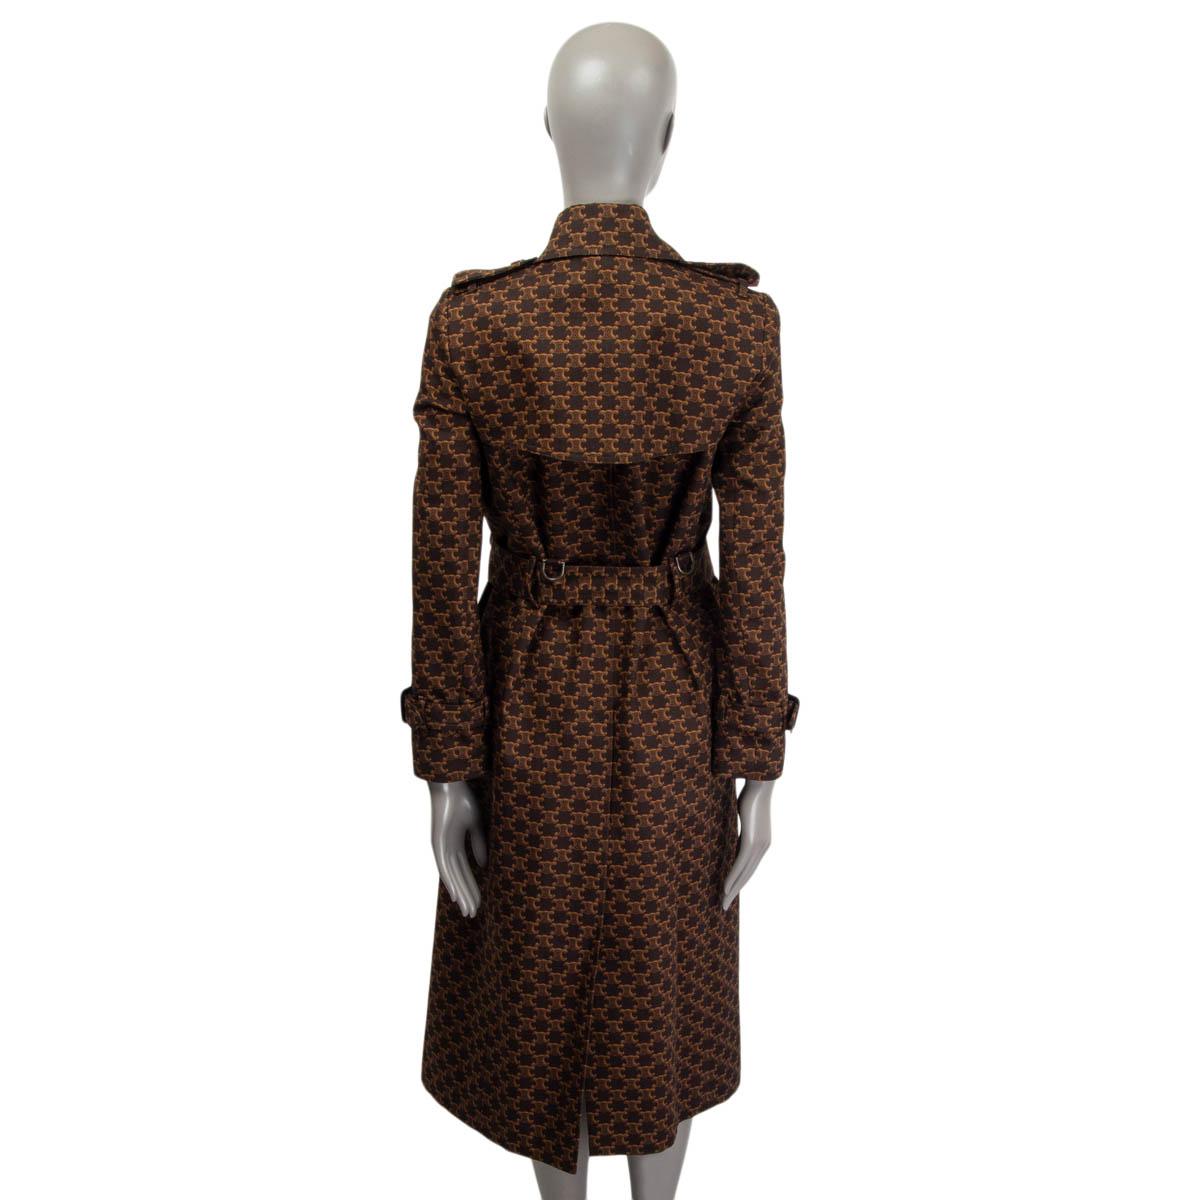  CELINE - Manteau TRIOMPHE en coton marron foncé imprimé TRIOMPHE - Veste courte S Pour femmes 